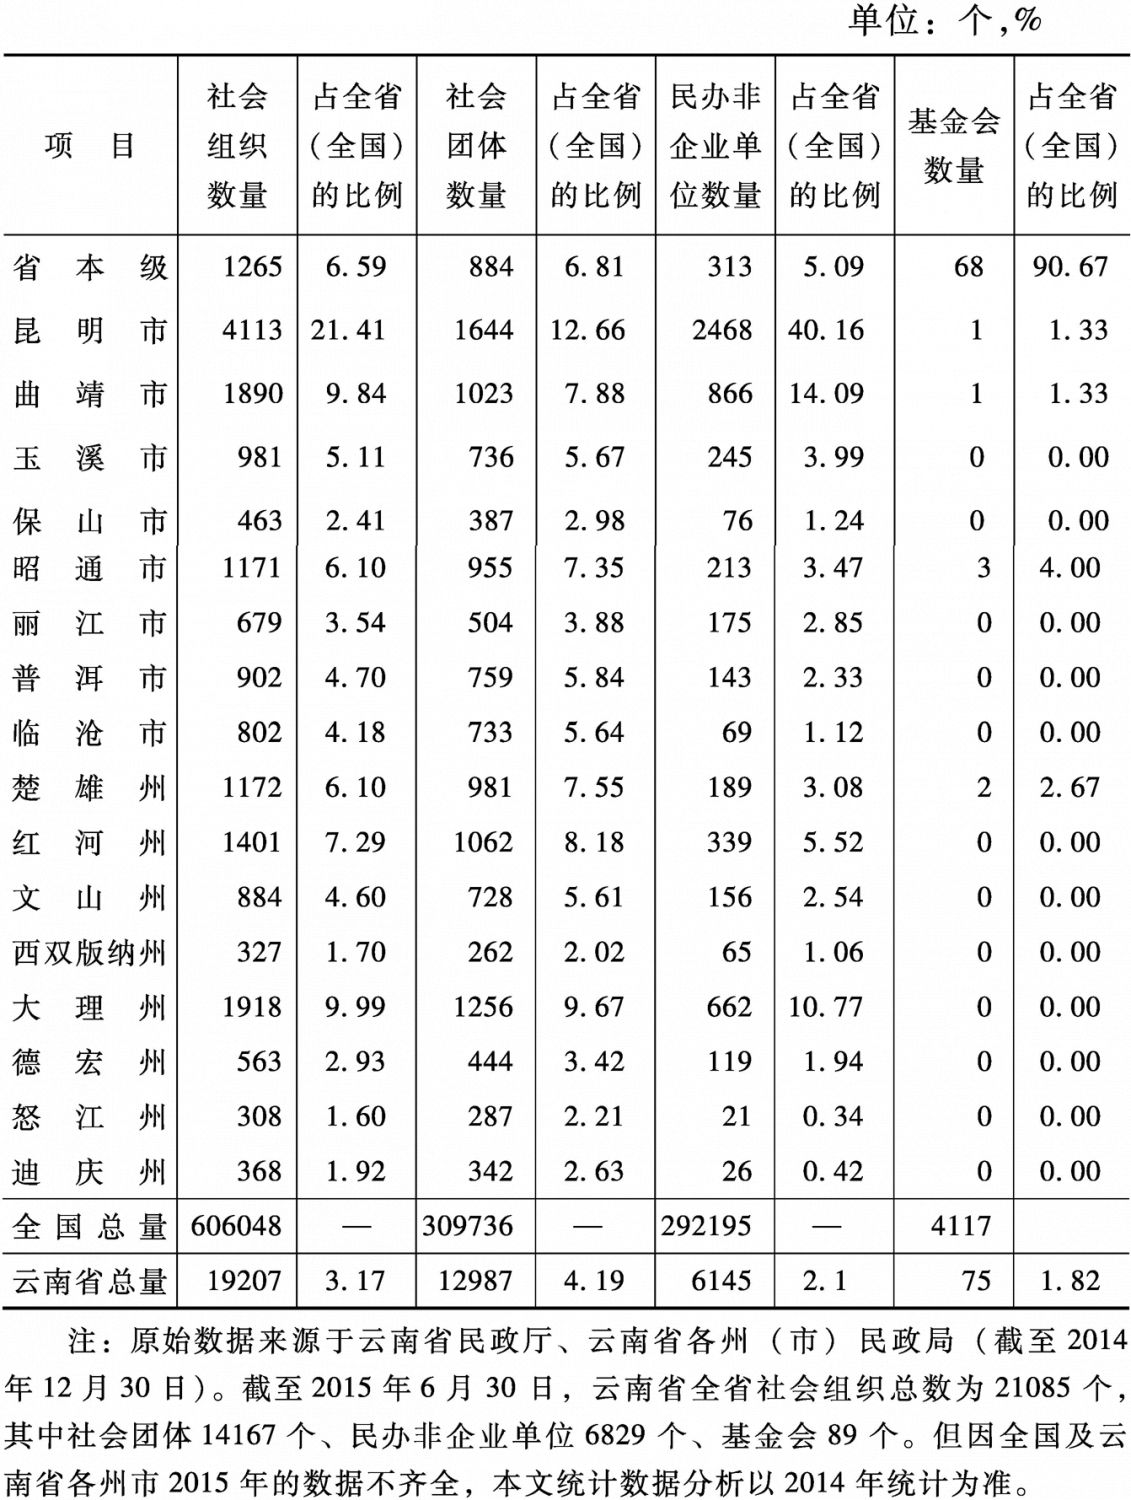 表1 2014年底云南省社会组织概况统计